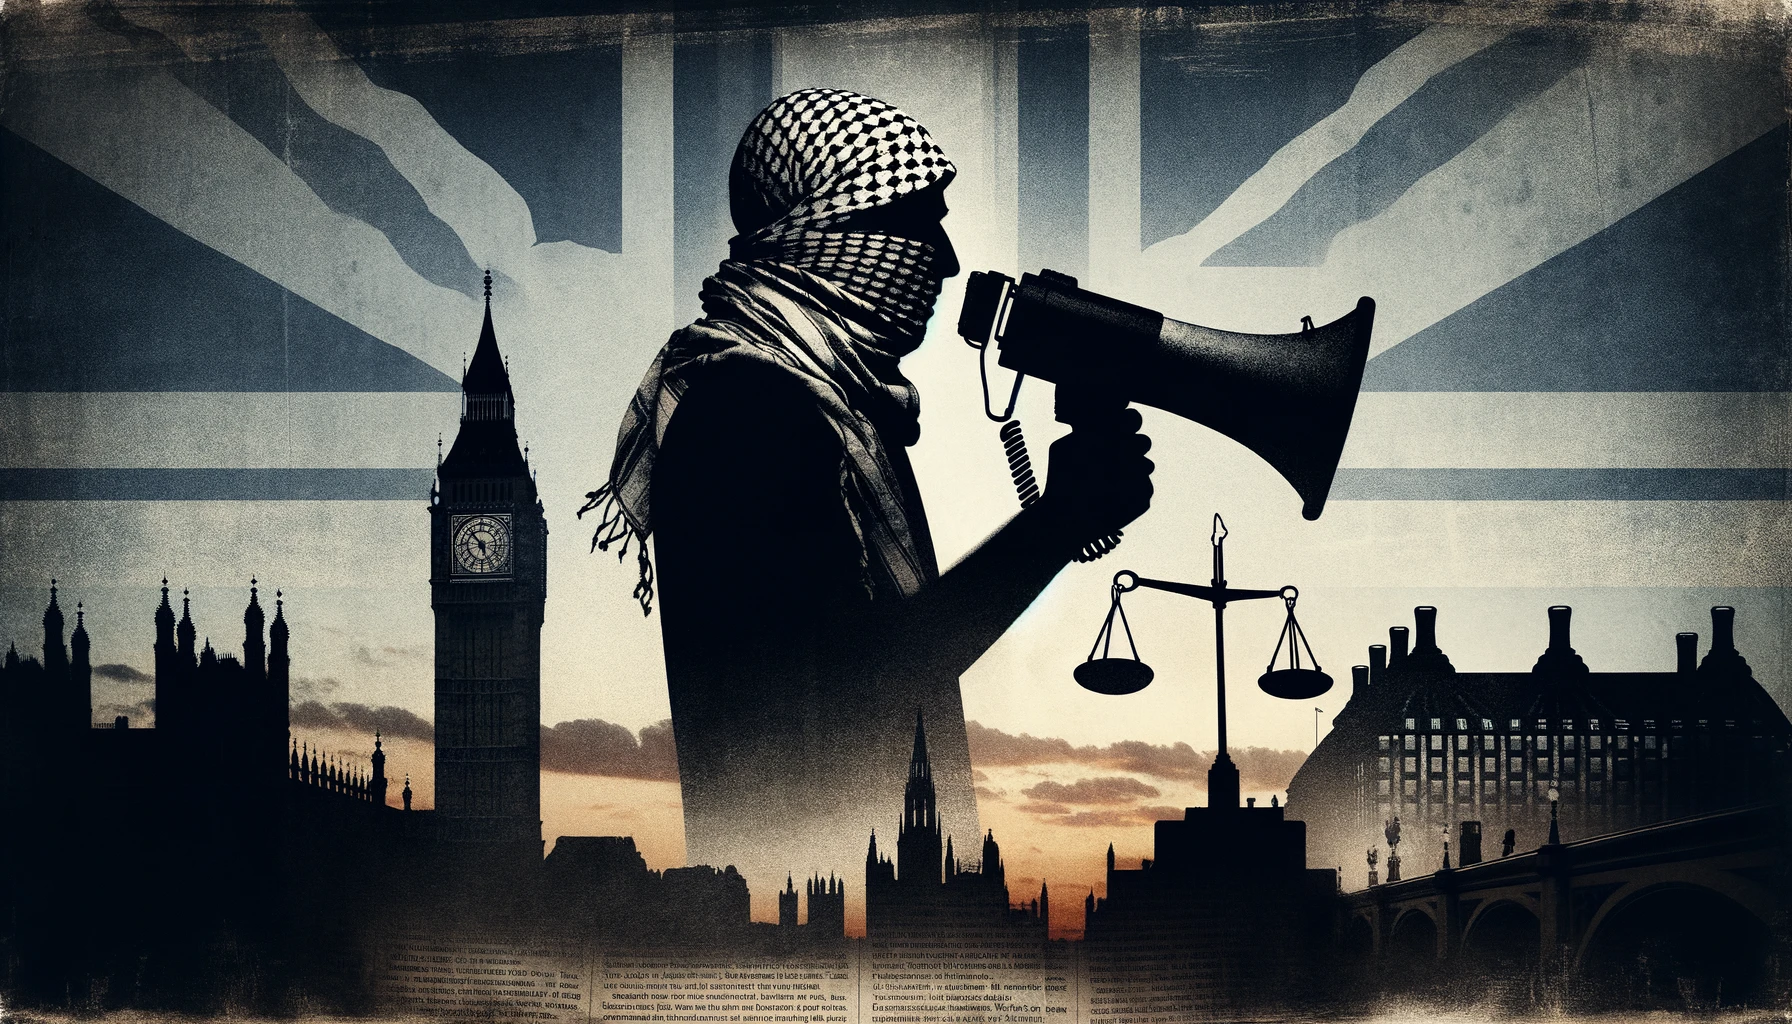 UK Islamist ‘Human Rights’ Group Exploits Oct. 7